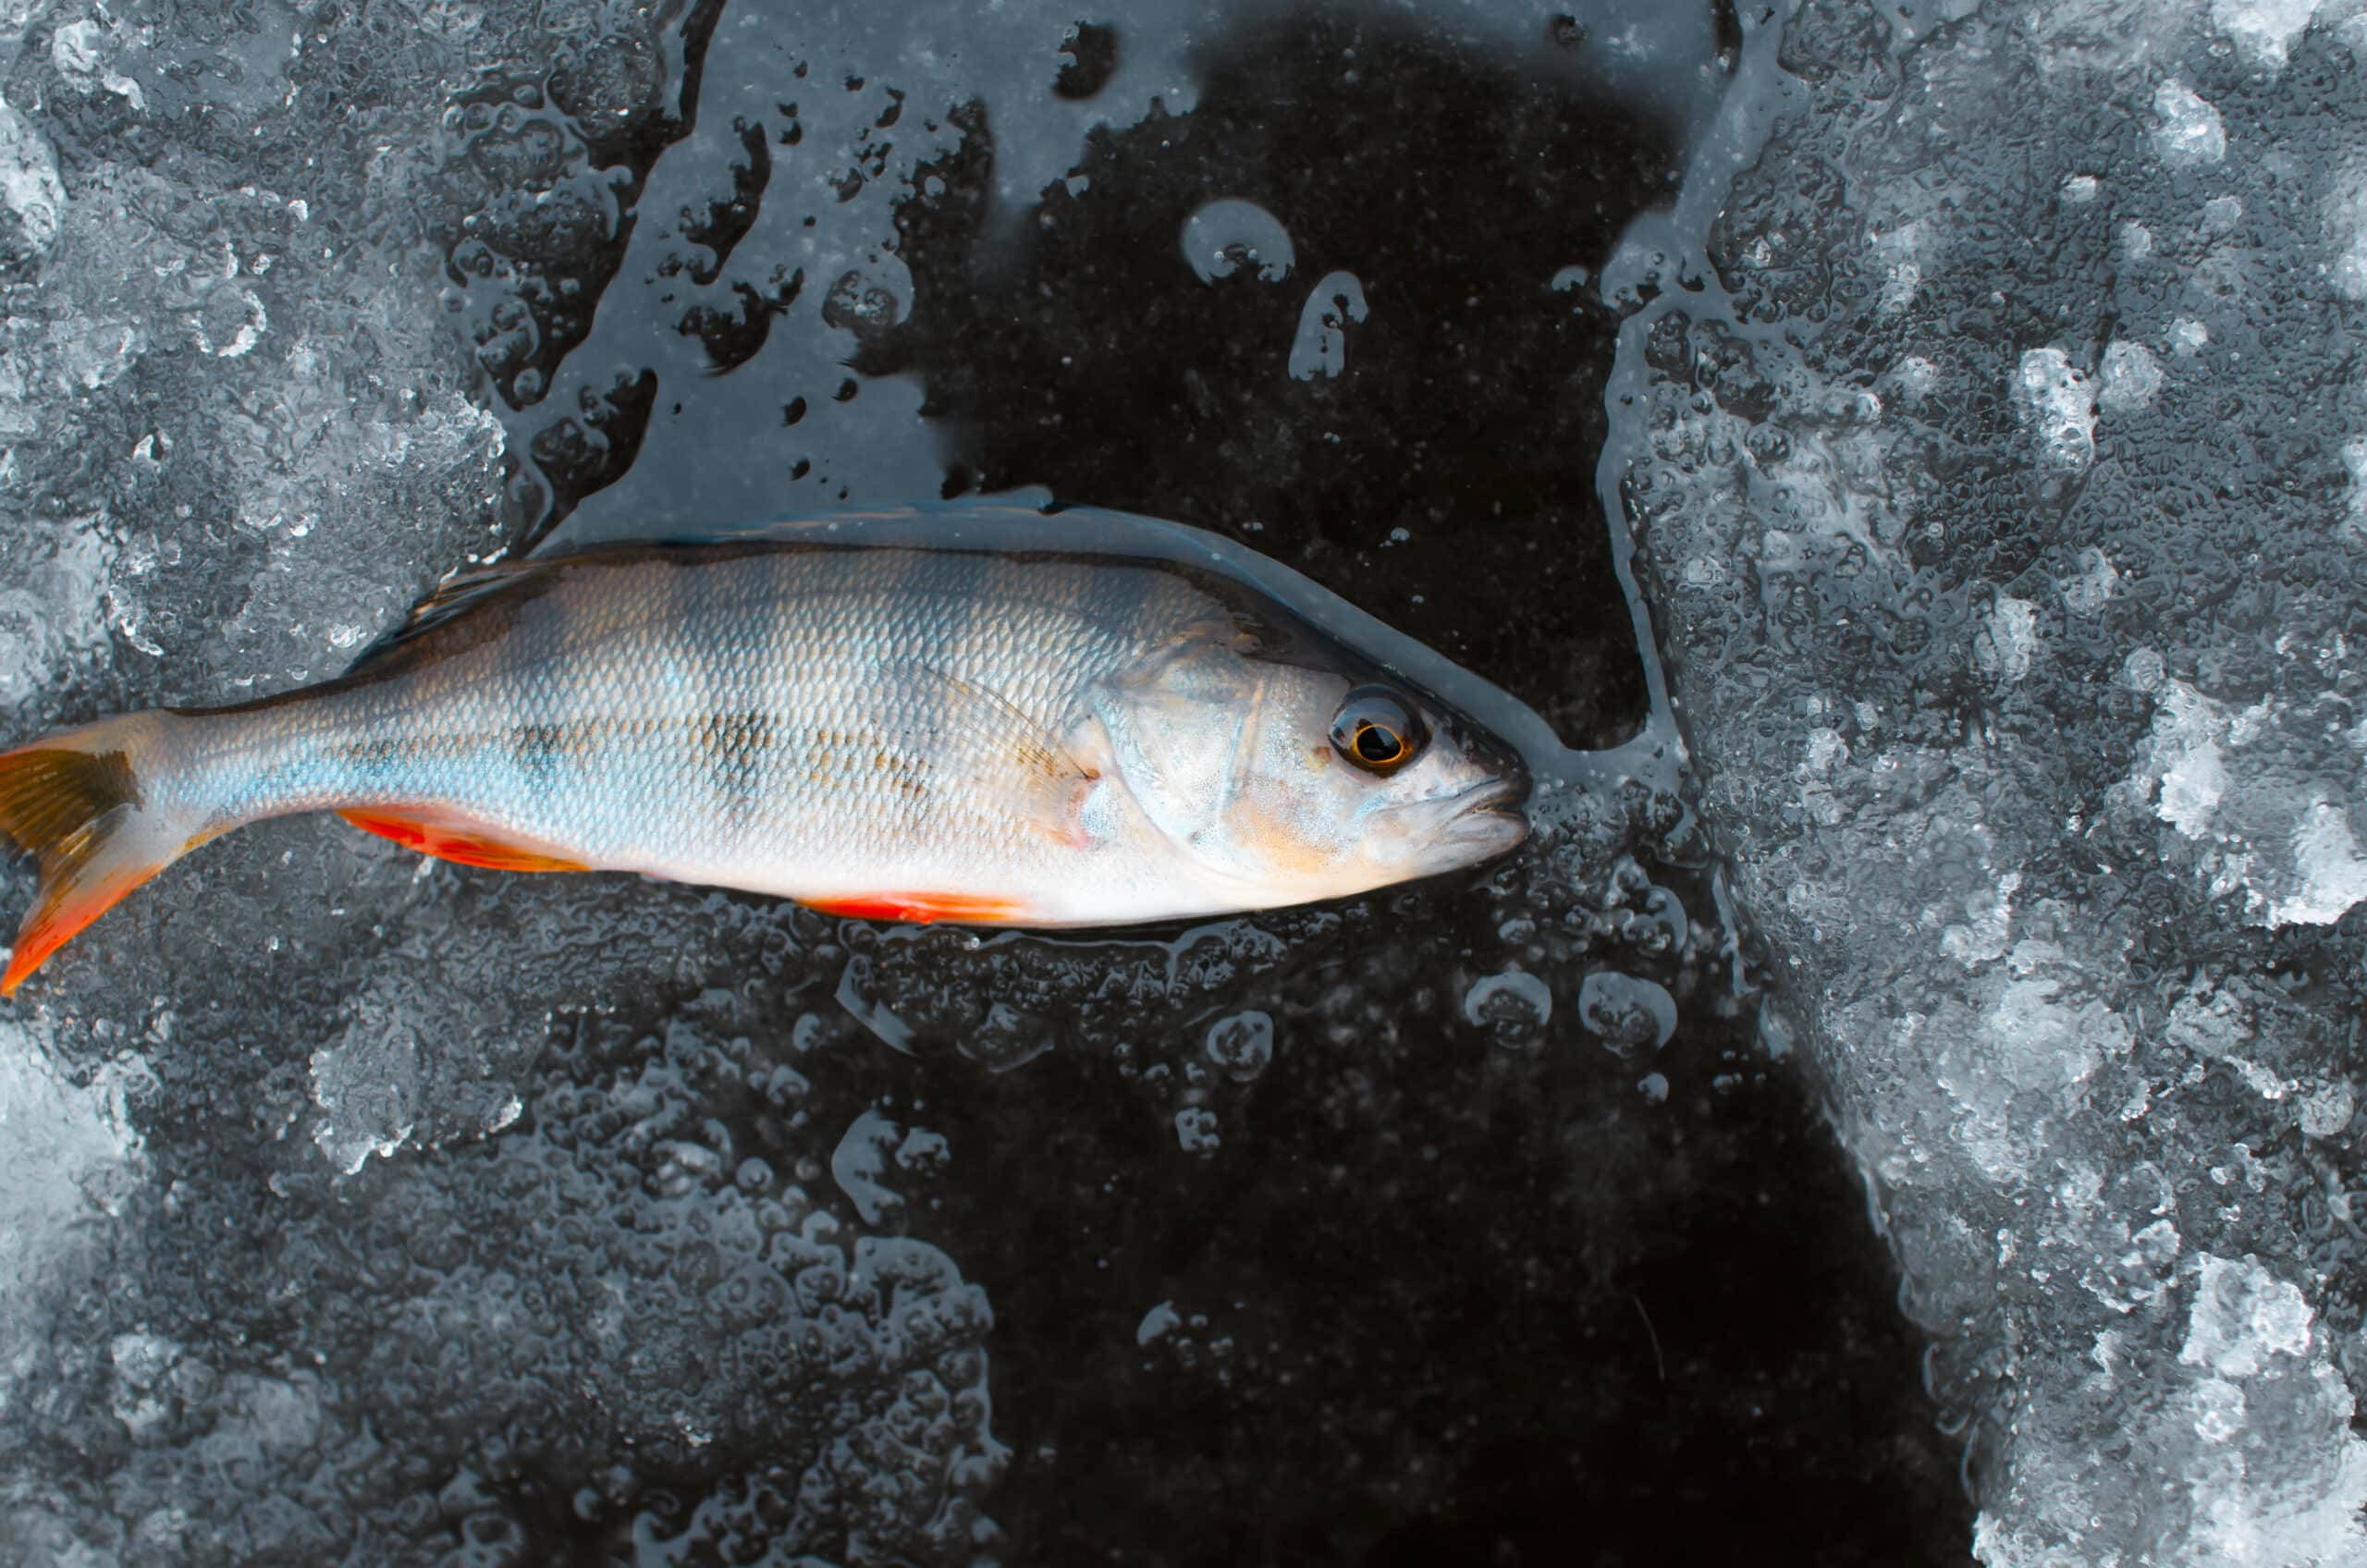 fanatic4fishing.com : What temperature should you stop fishing?